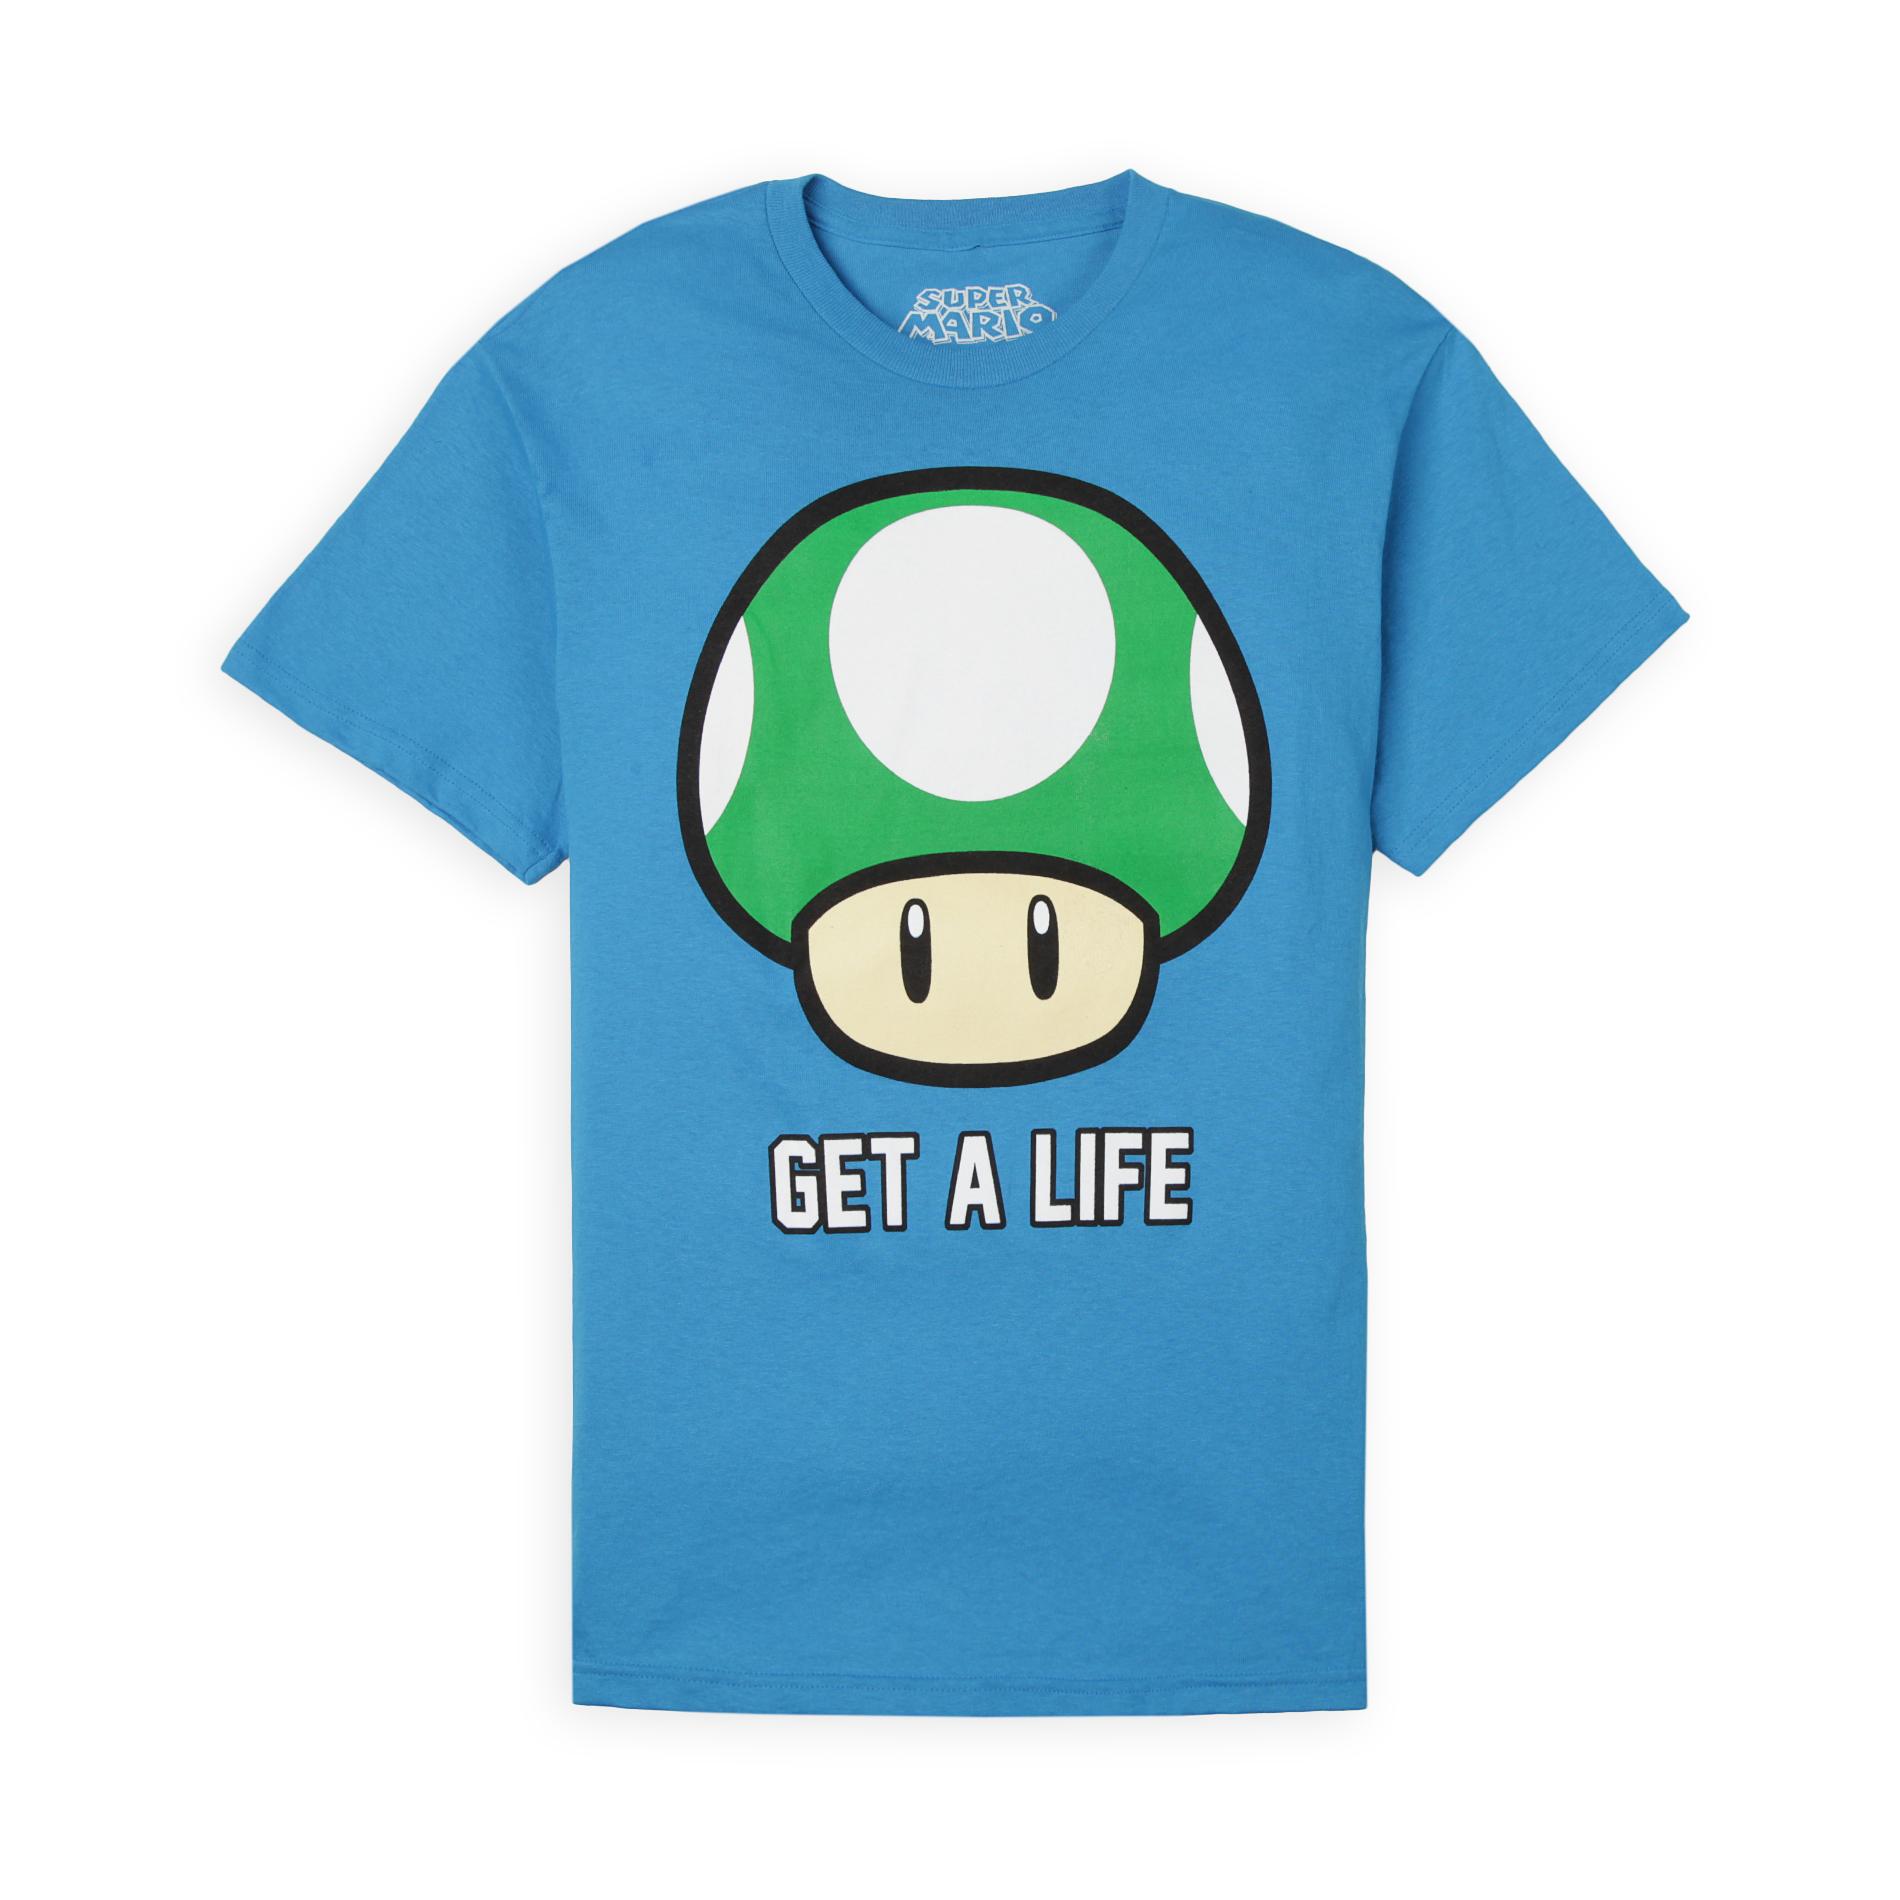 Super Mario Bros. Young Men's Graphic T-Shirt - Get A Life